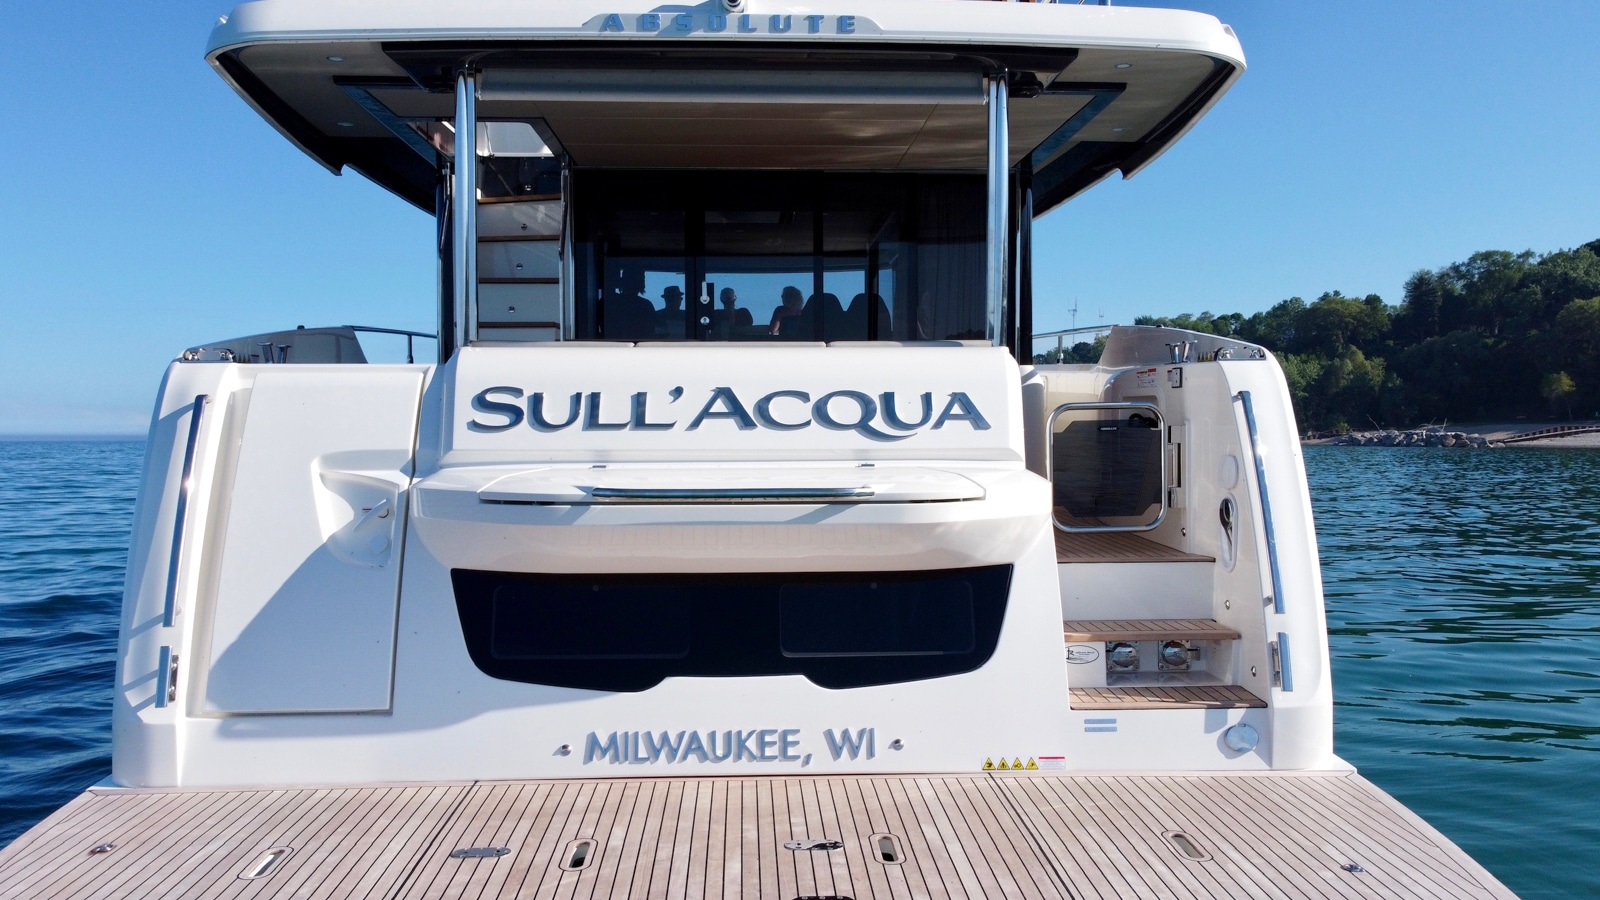 The long distance cruise of Absolute Sull'Acqua Sull'Acqua transom